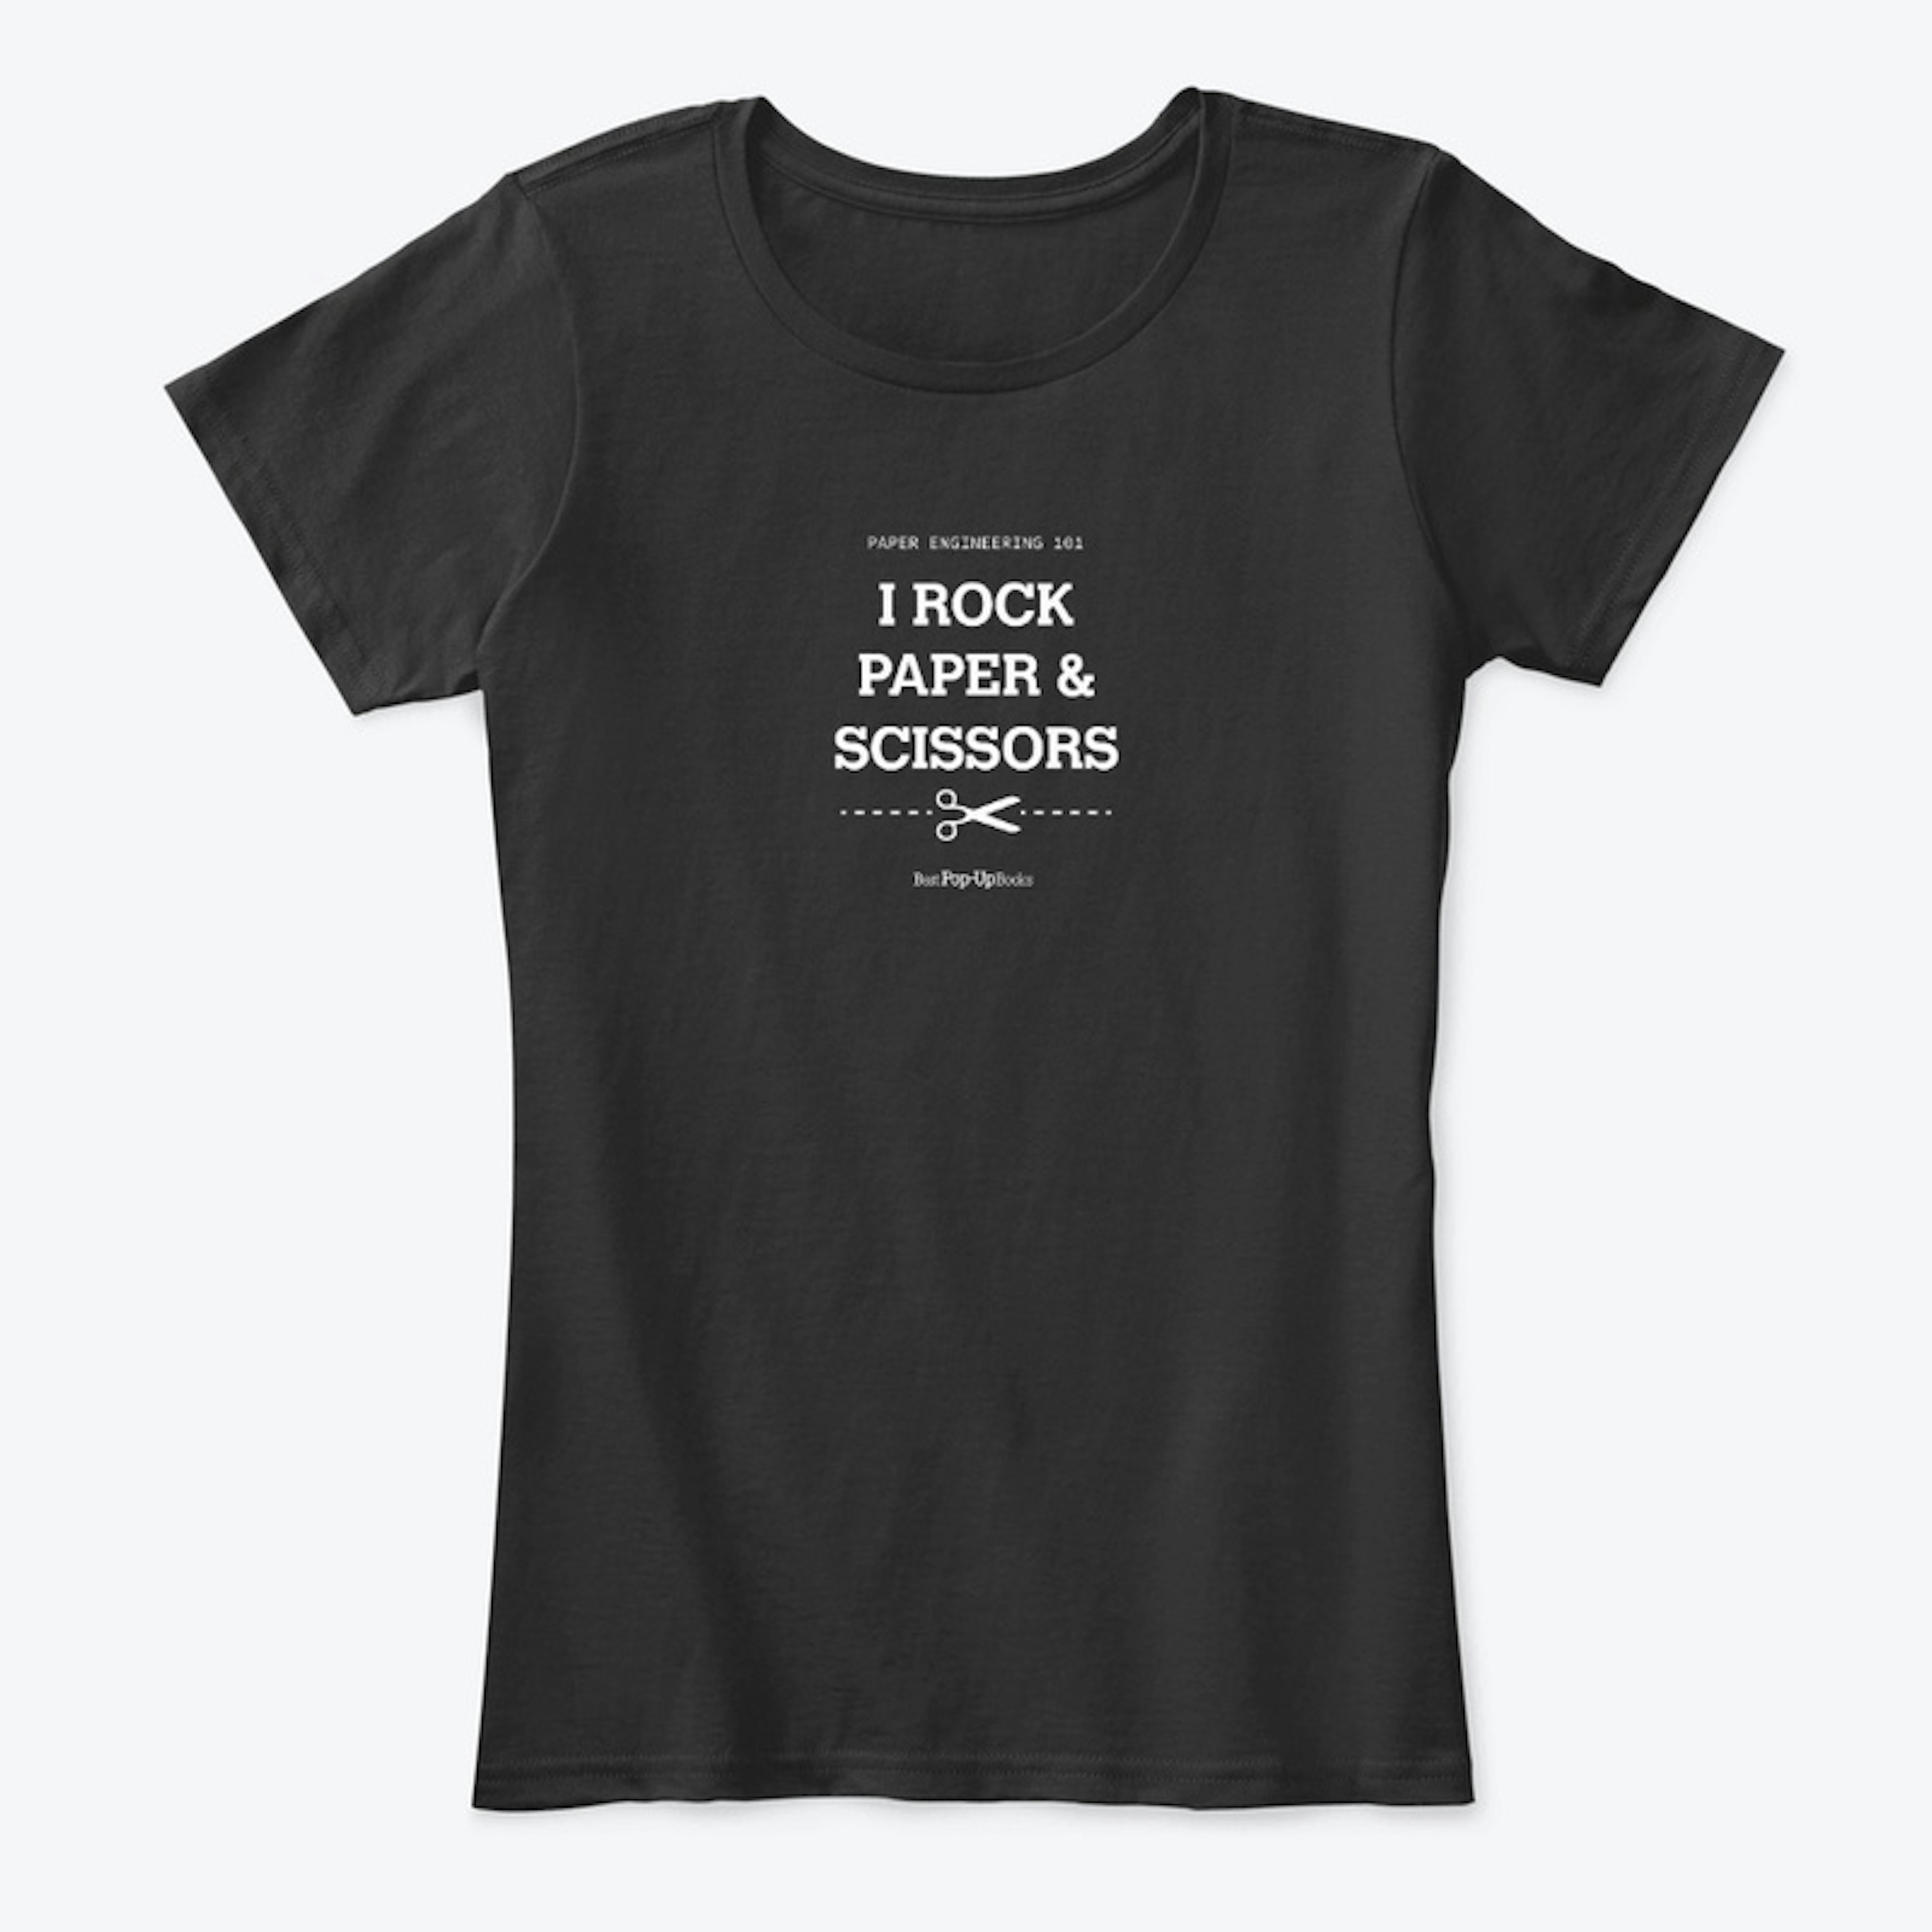 I Rock Paper & Scissors T-shirt Black